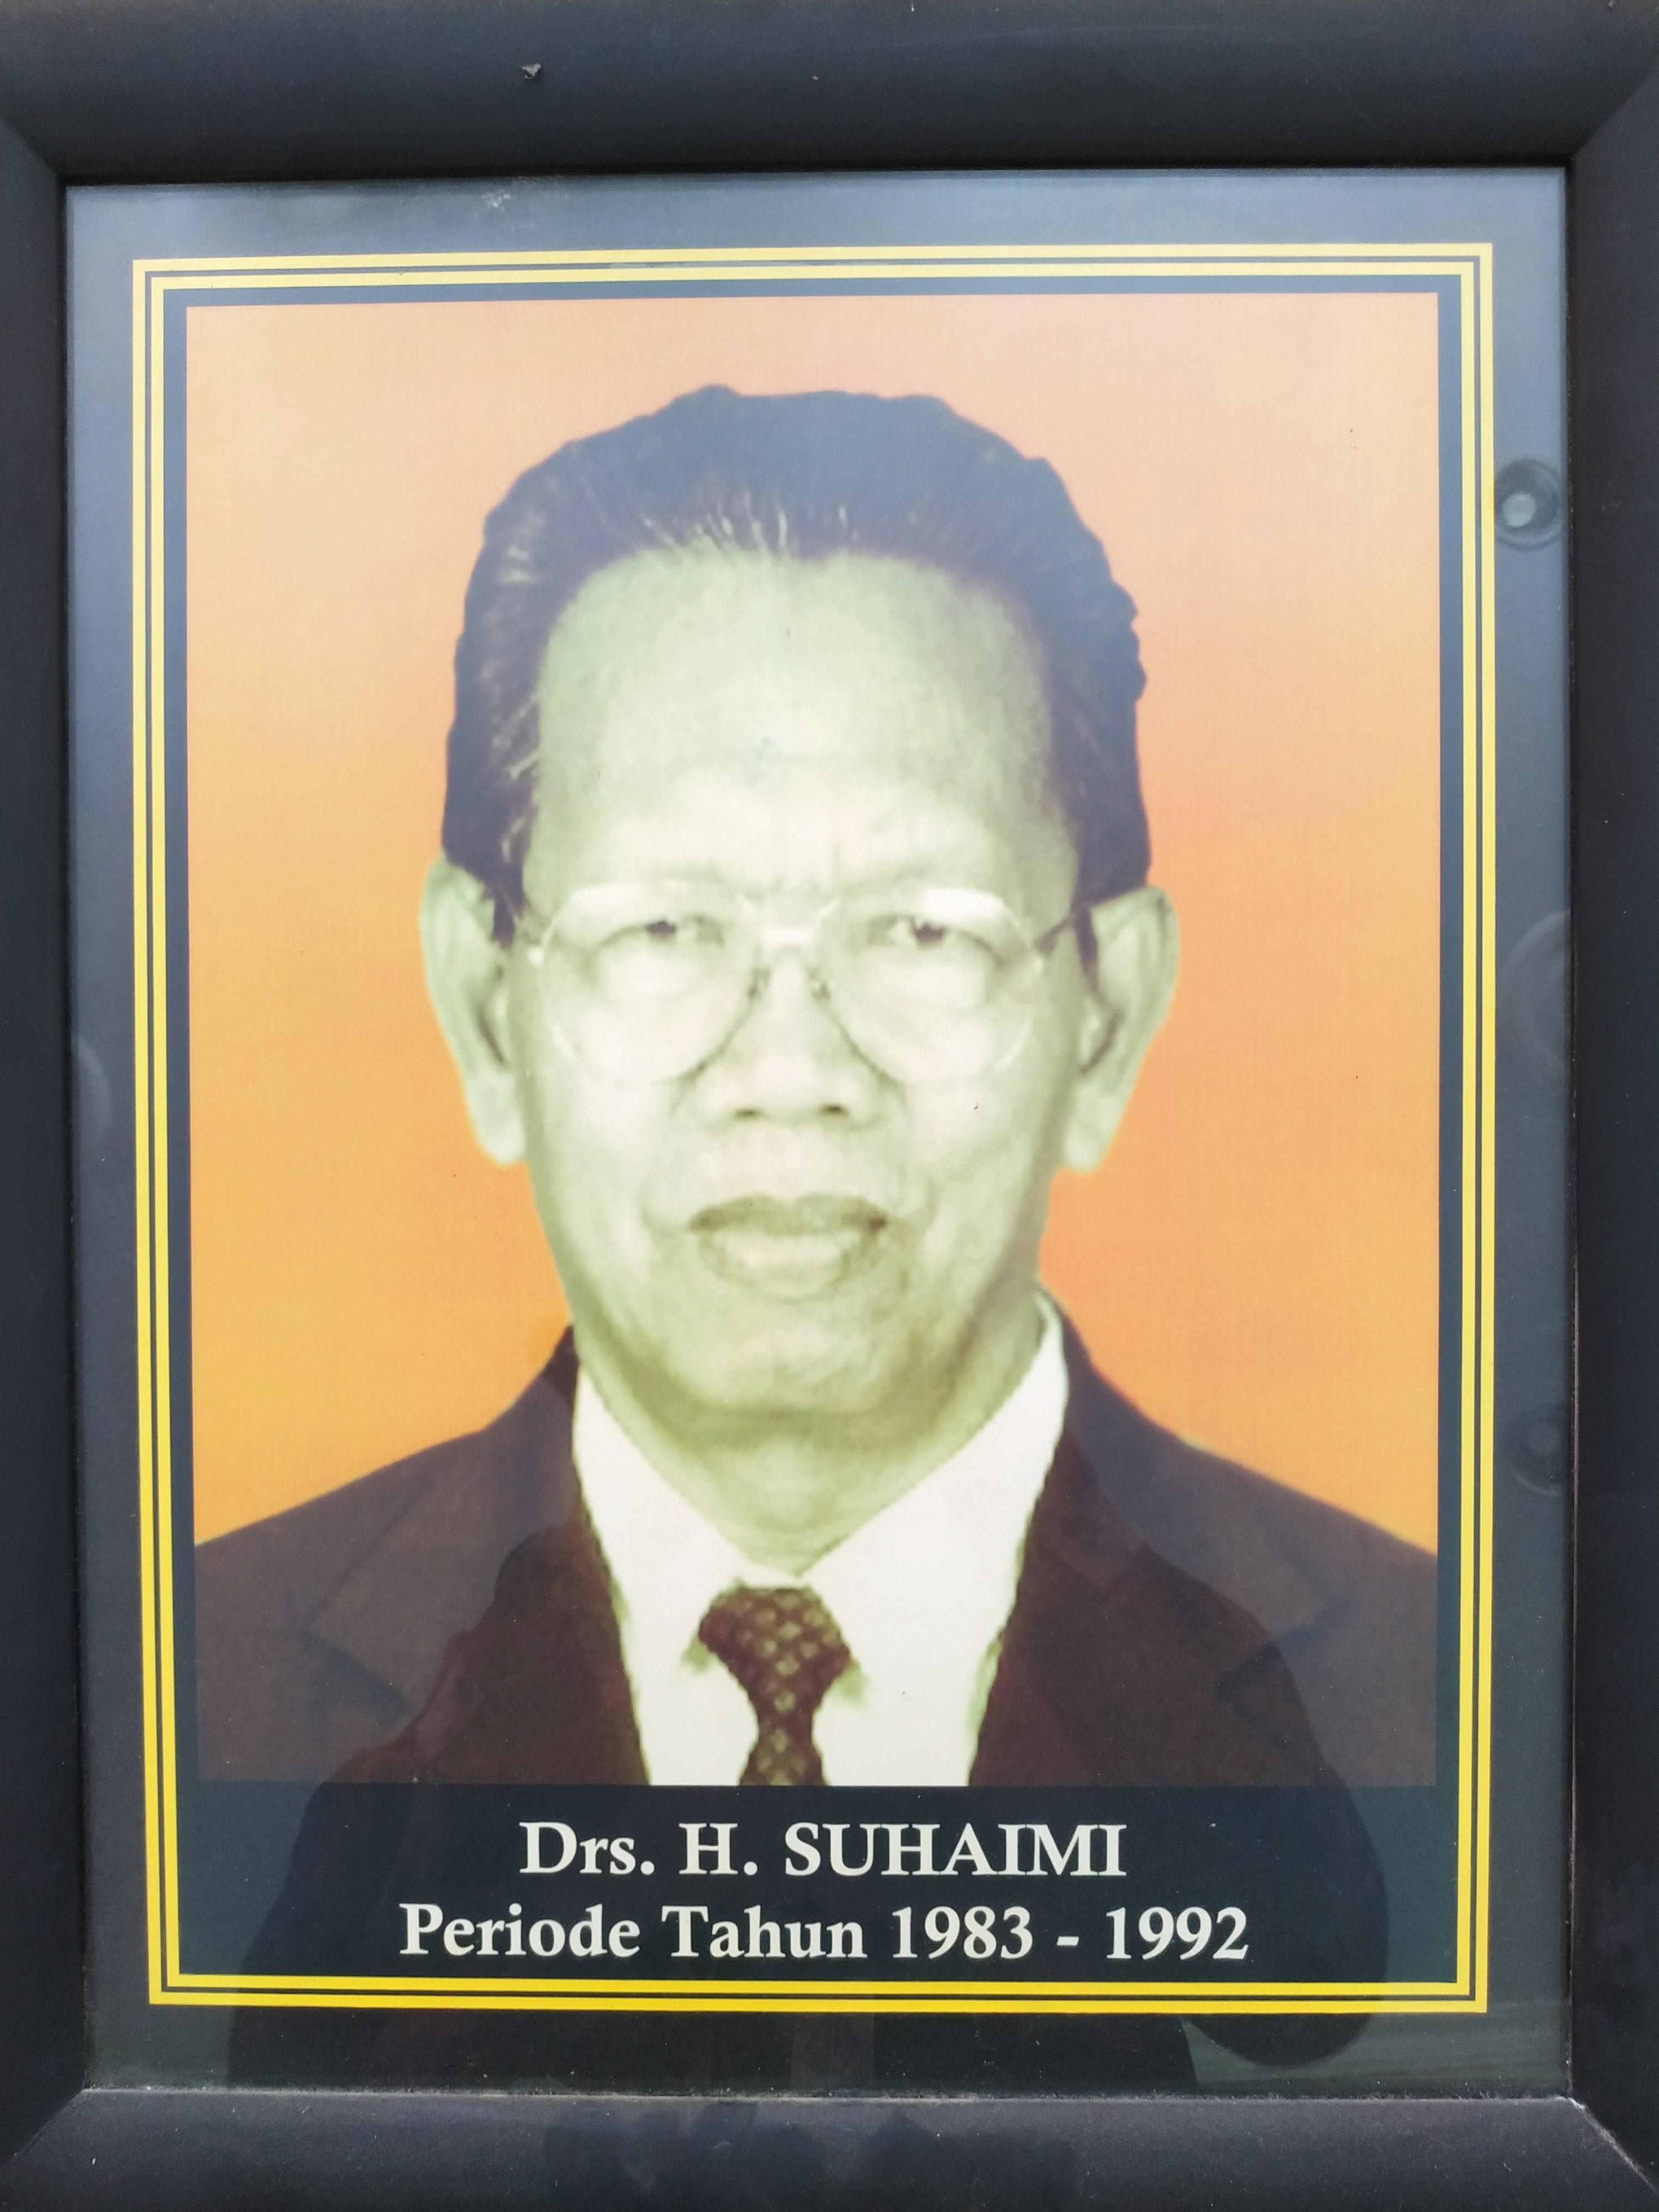 Mantan Ketua 1983 1992 Suhaimi